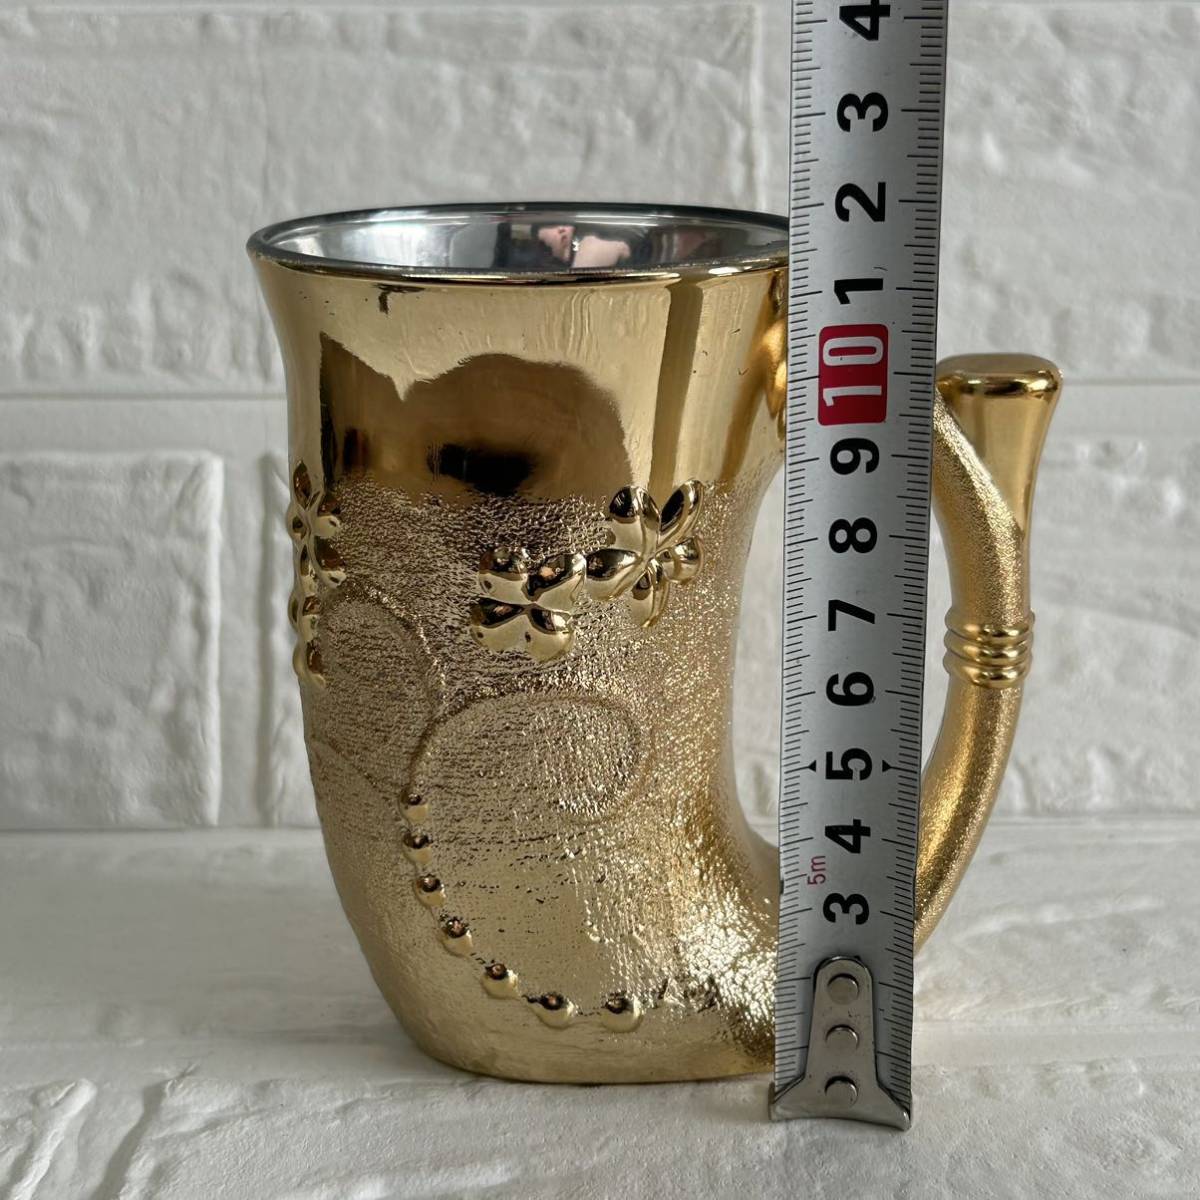  mug beer mug Western-style tableware glass sake cup and bottle Via mug Be ruby ru jug antique retro gold color Gold color retro 